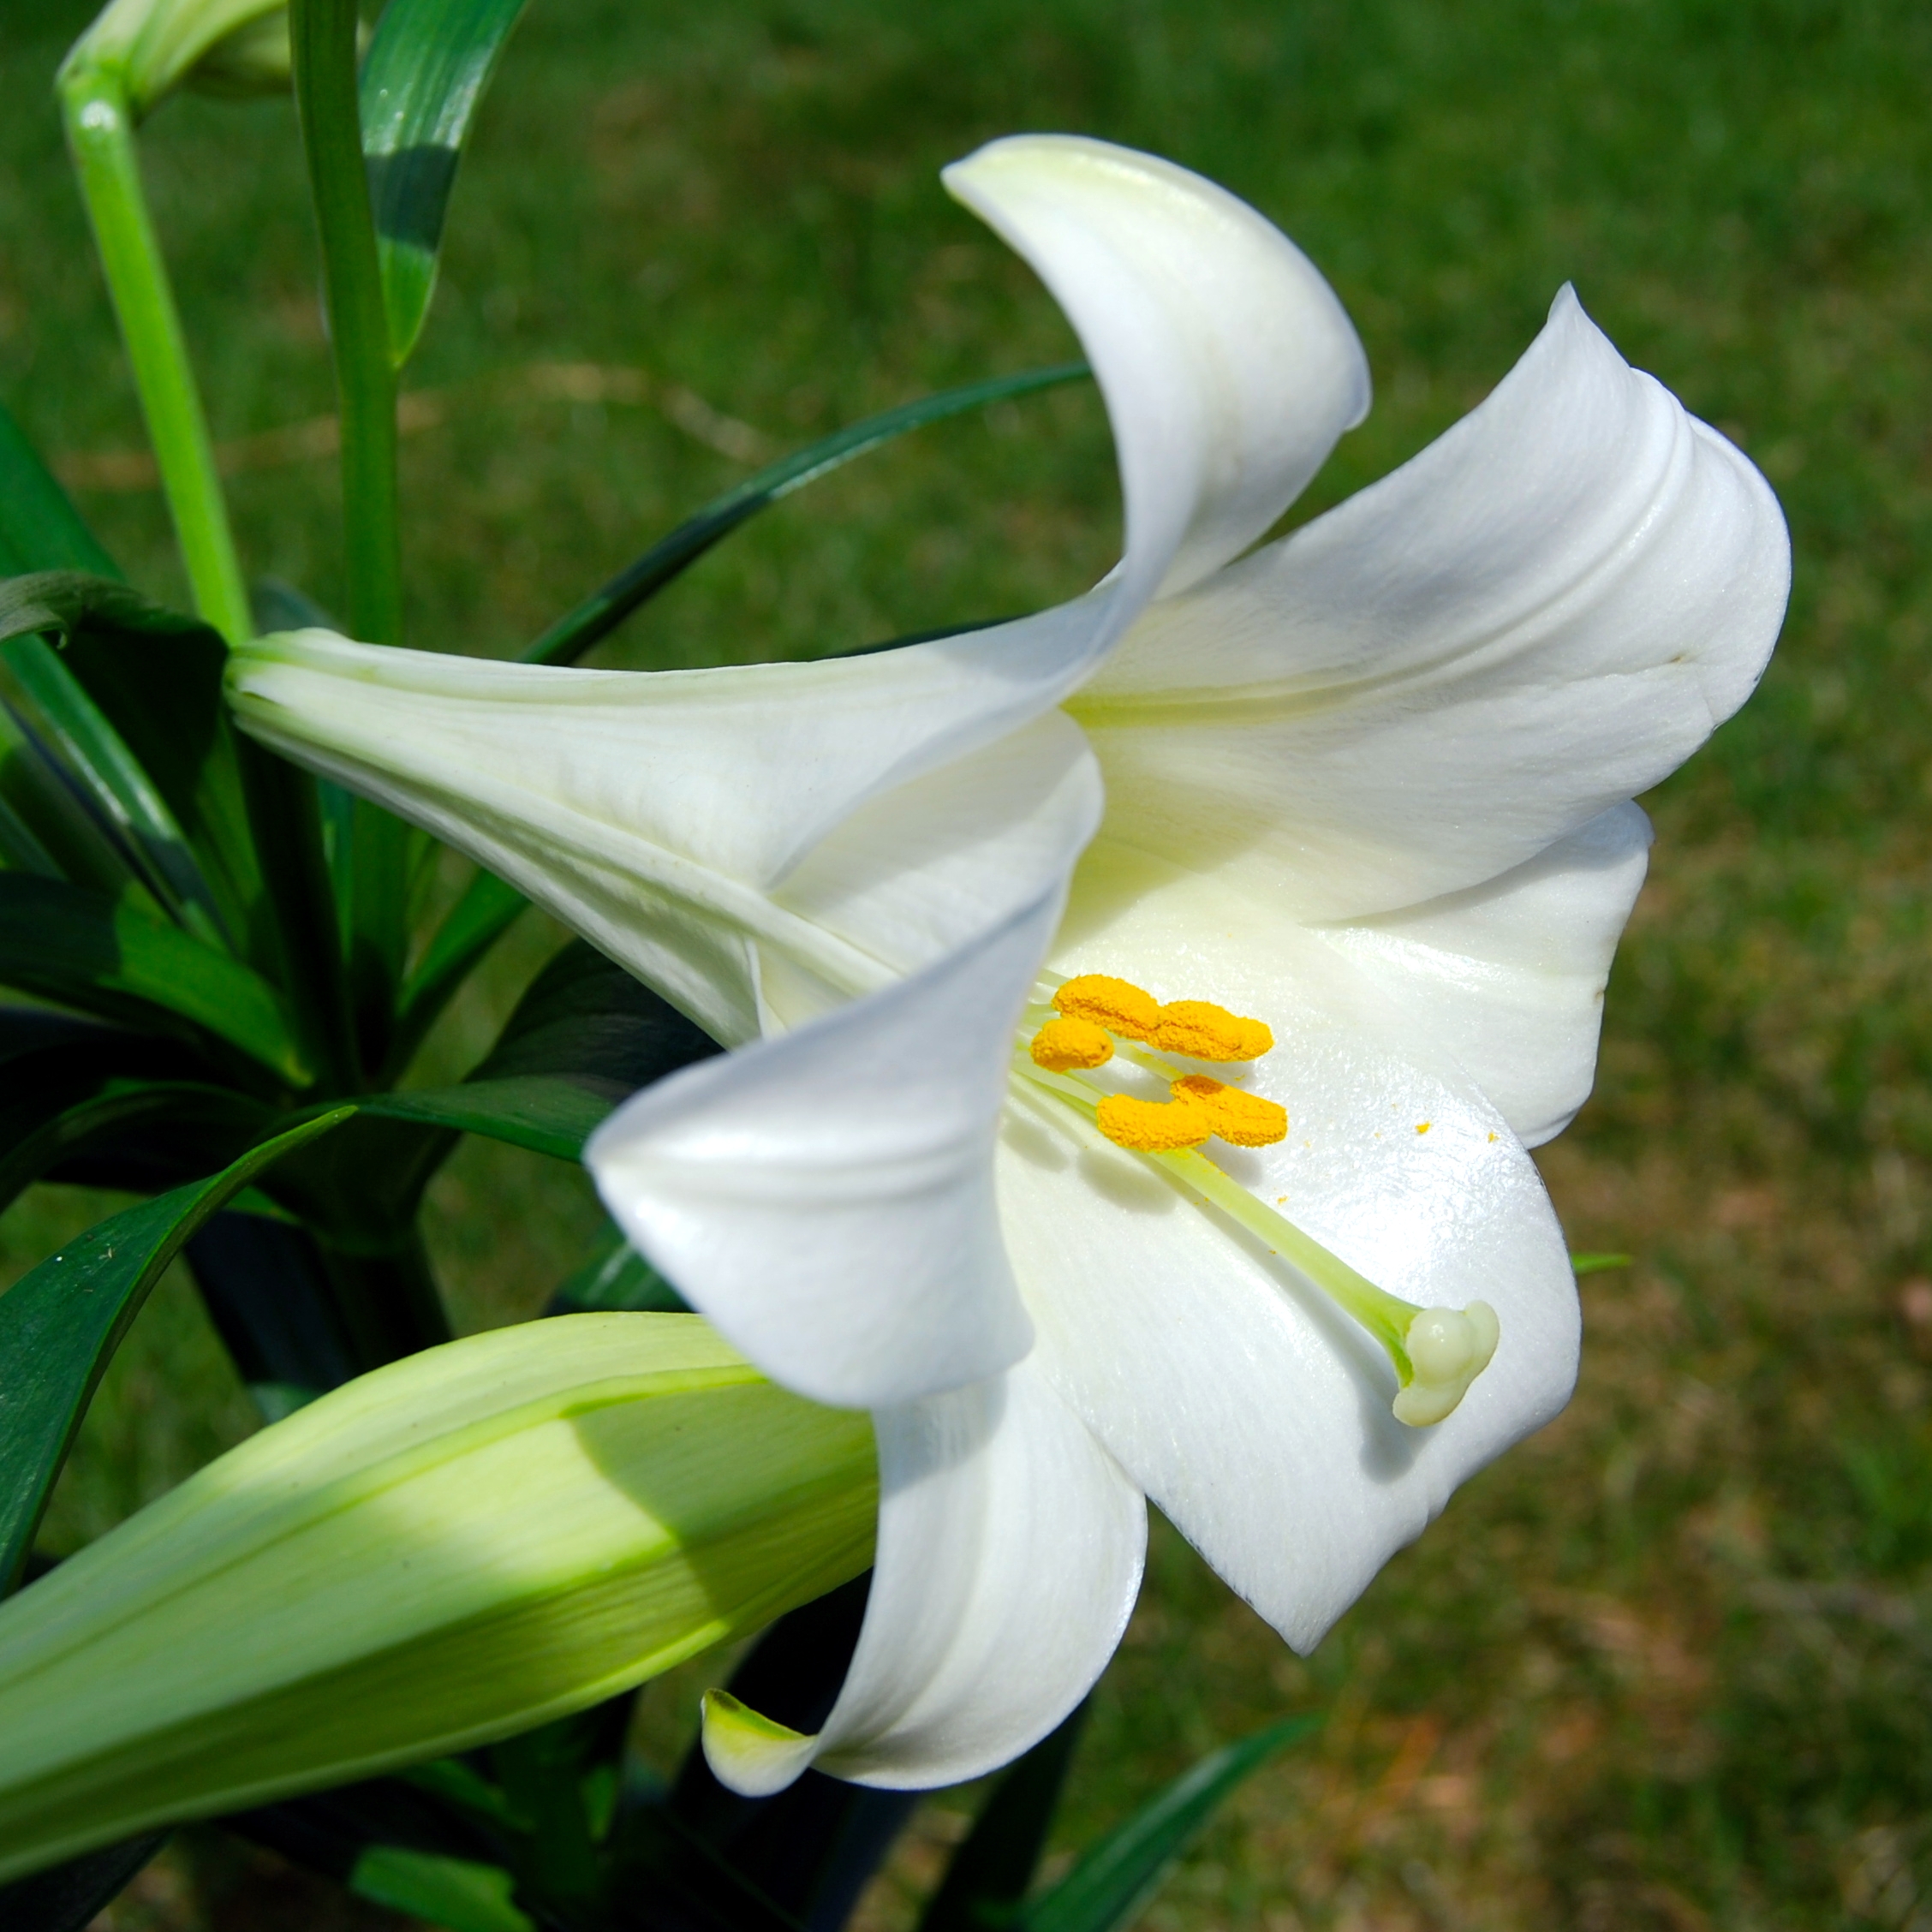 Tổng hợp hình ảnh hoa lan ý đẹp nhất – Hoa lan ý có thể hút các tia bức xạ nhiệt trong không khí - [Kích thước hình ảnh: 2256x2256 px]